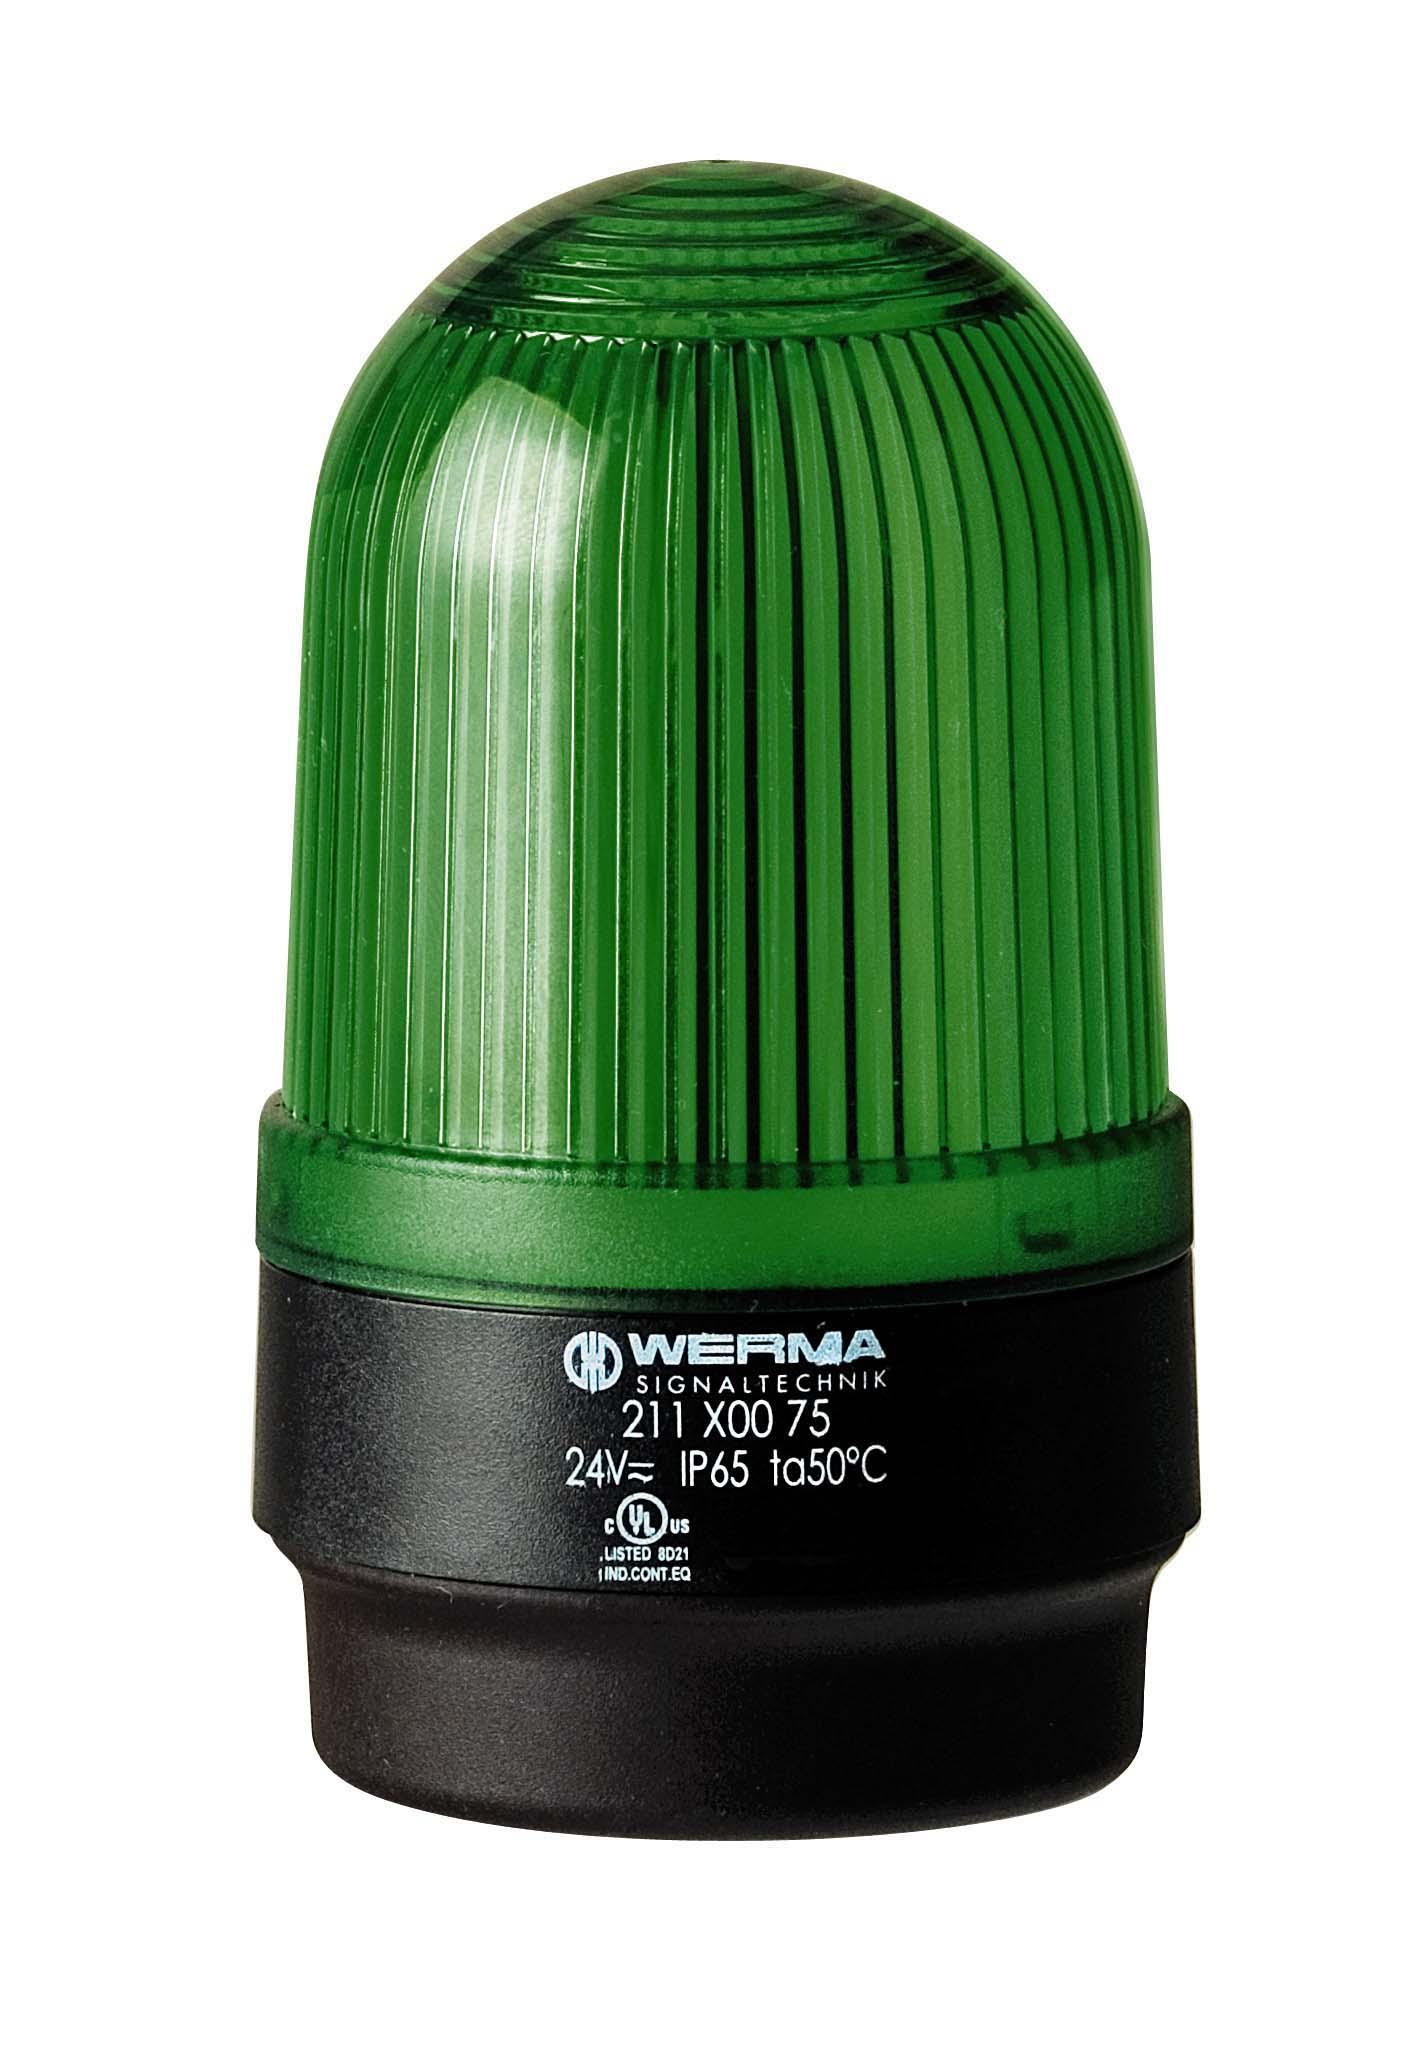 Produktfoto 1 von Werma 211, LED, Dauer Signalleuchte Grün, 230 V